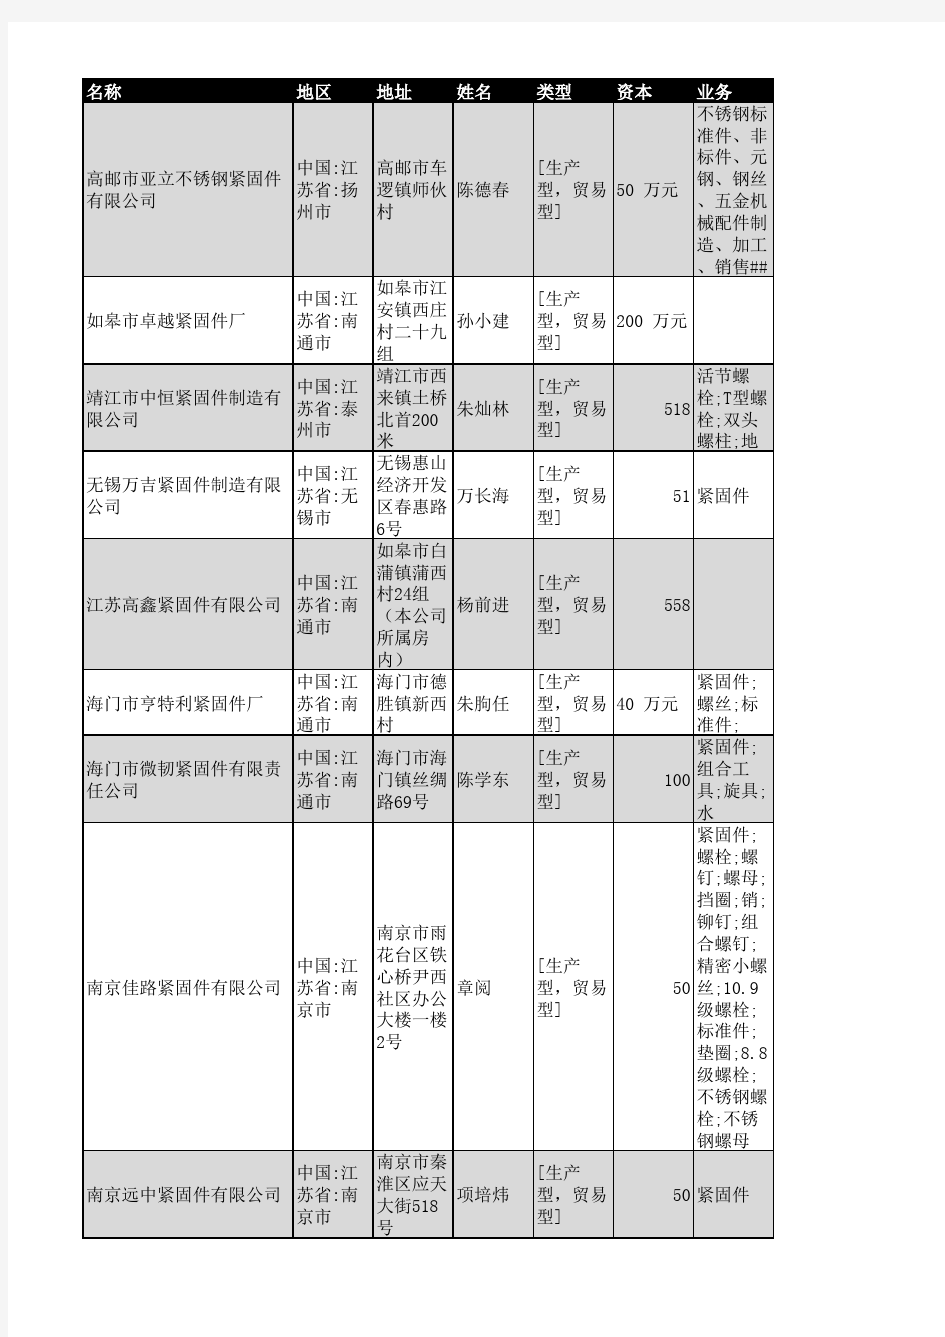 2018年江苏省紧固件企业名录2974家